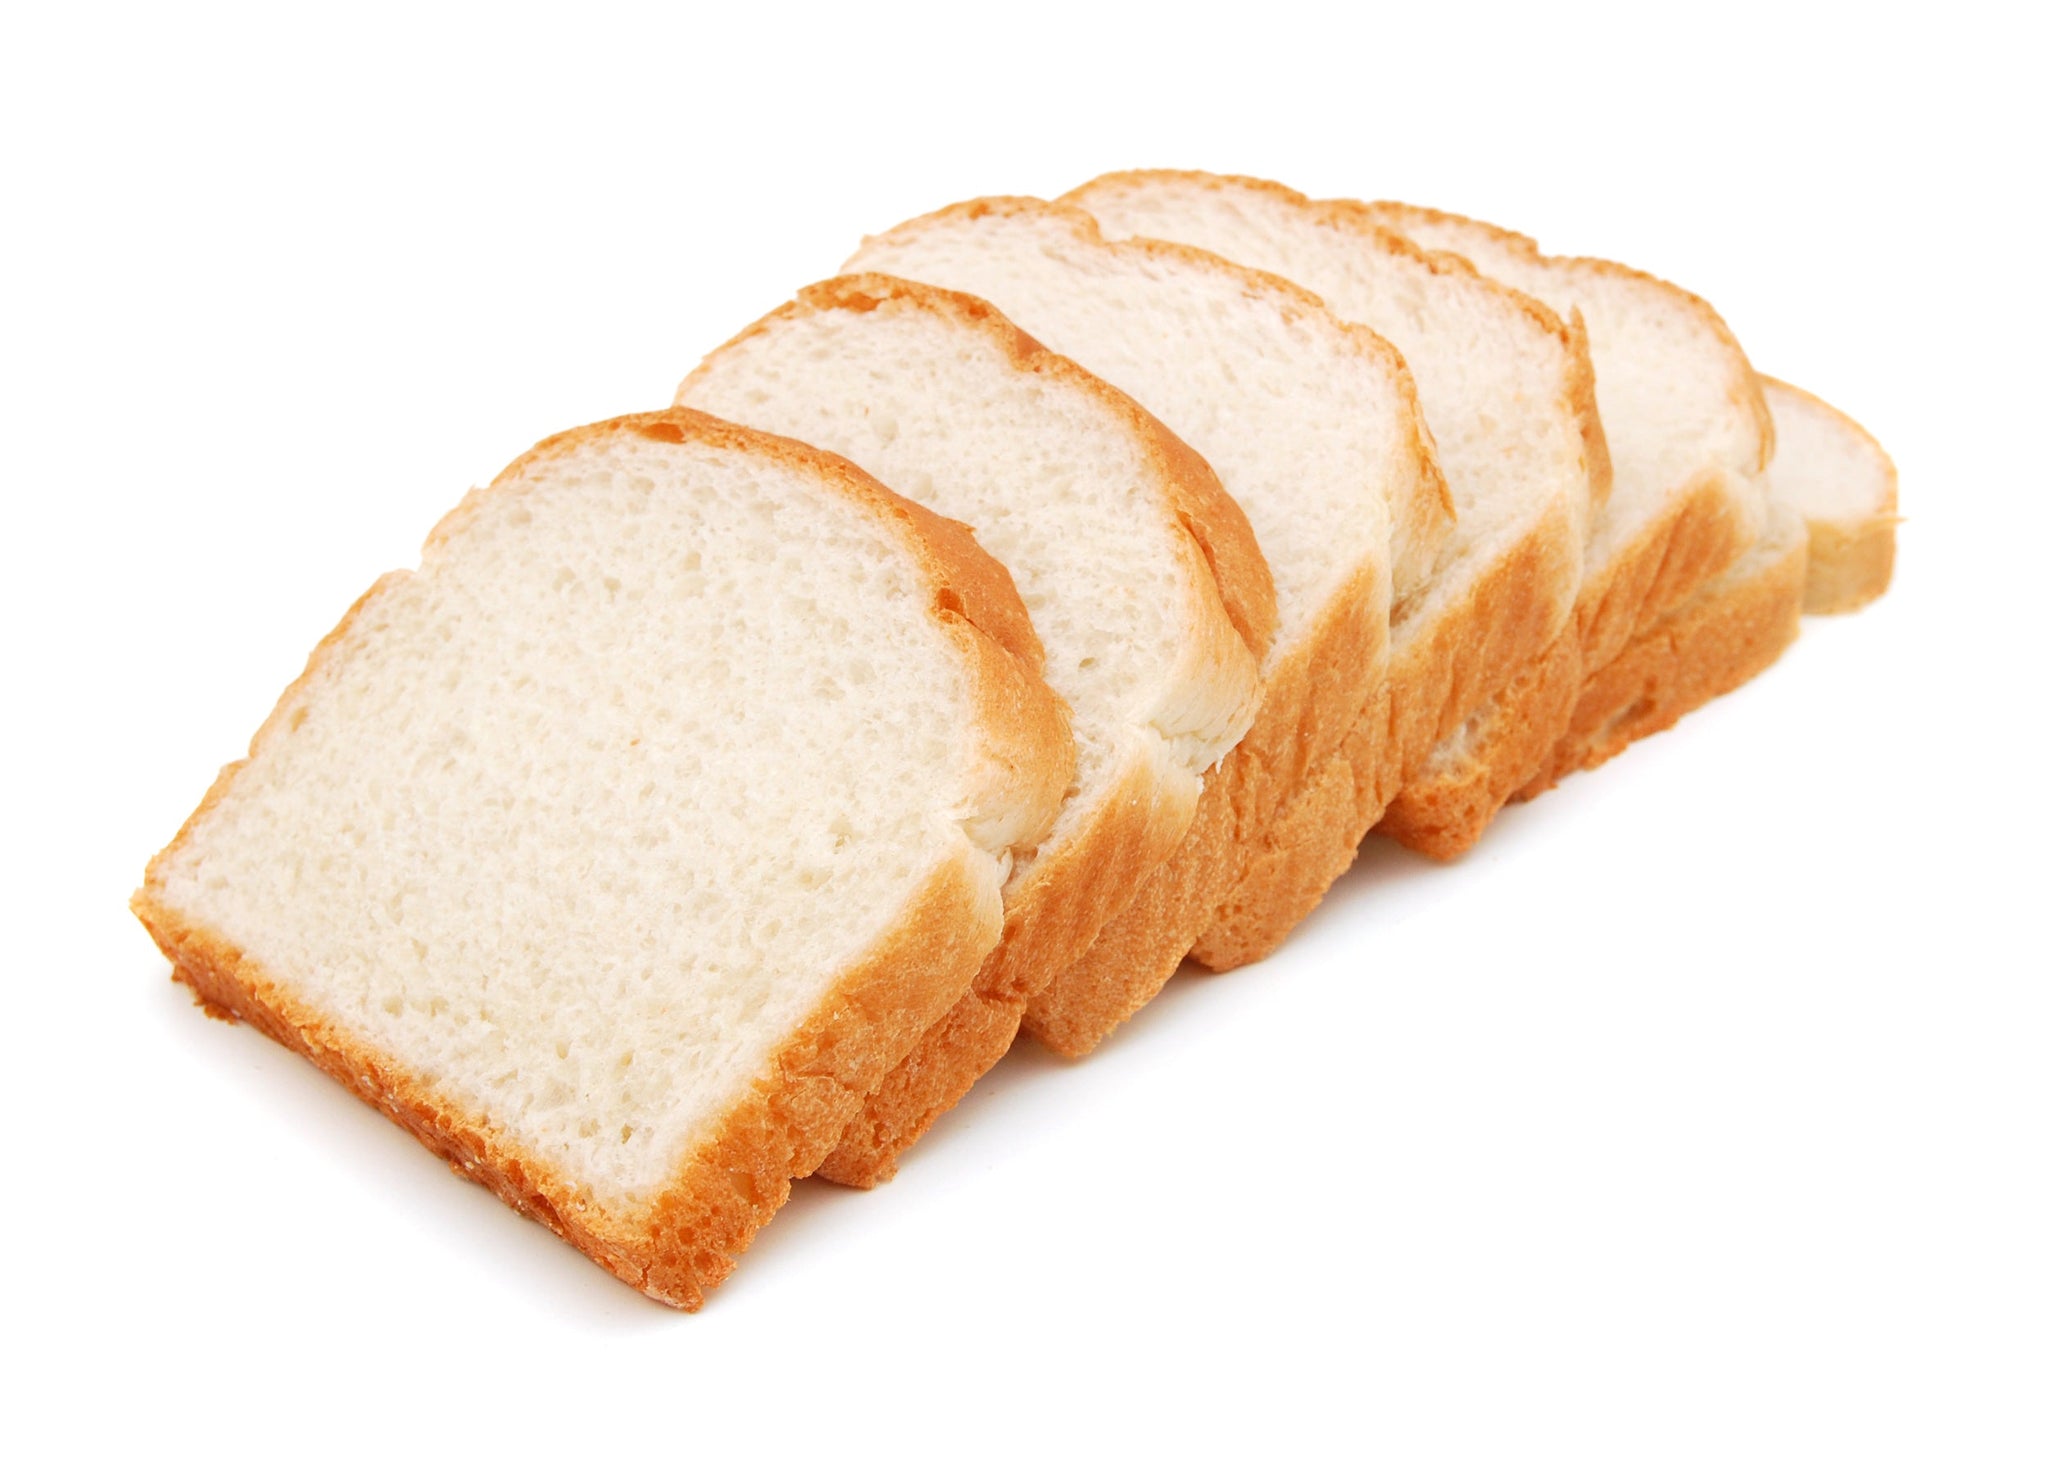 bah>Wonder or Special Blend White Bread (sliced) - 1 loaf